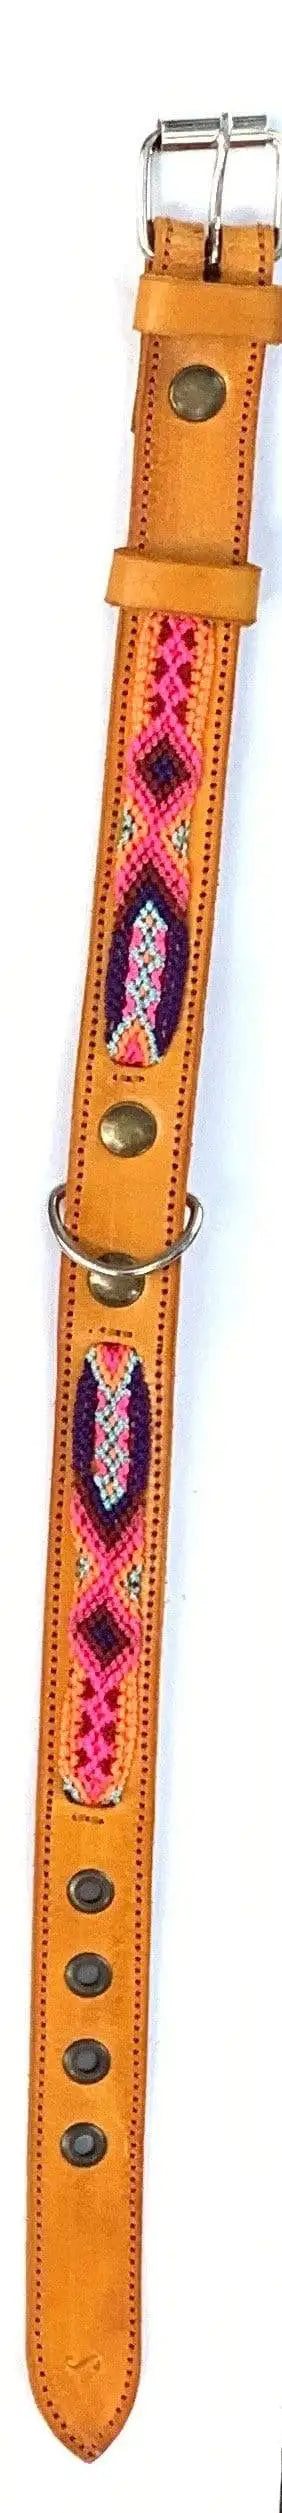 Double Detail Artisanal Handmade Dog Collars - 10